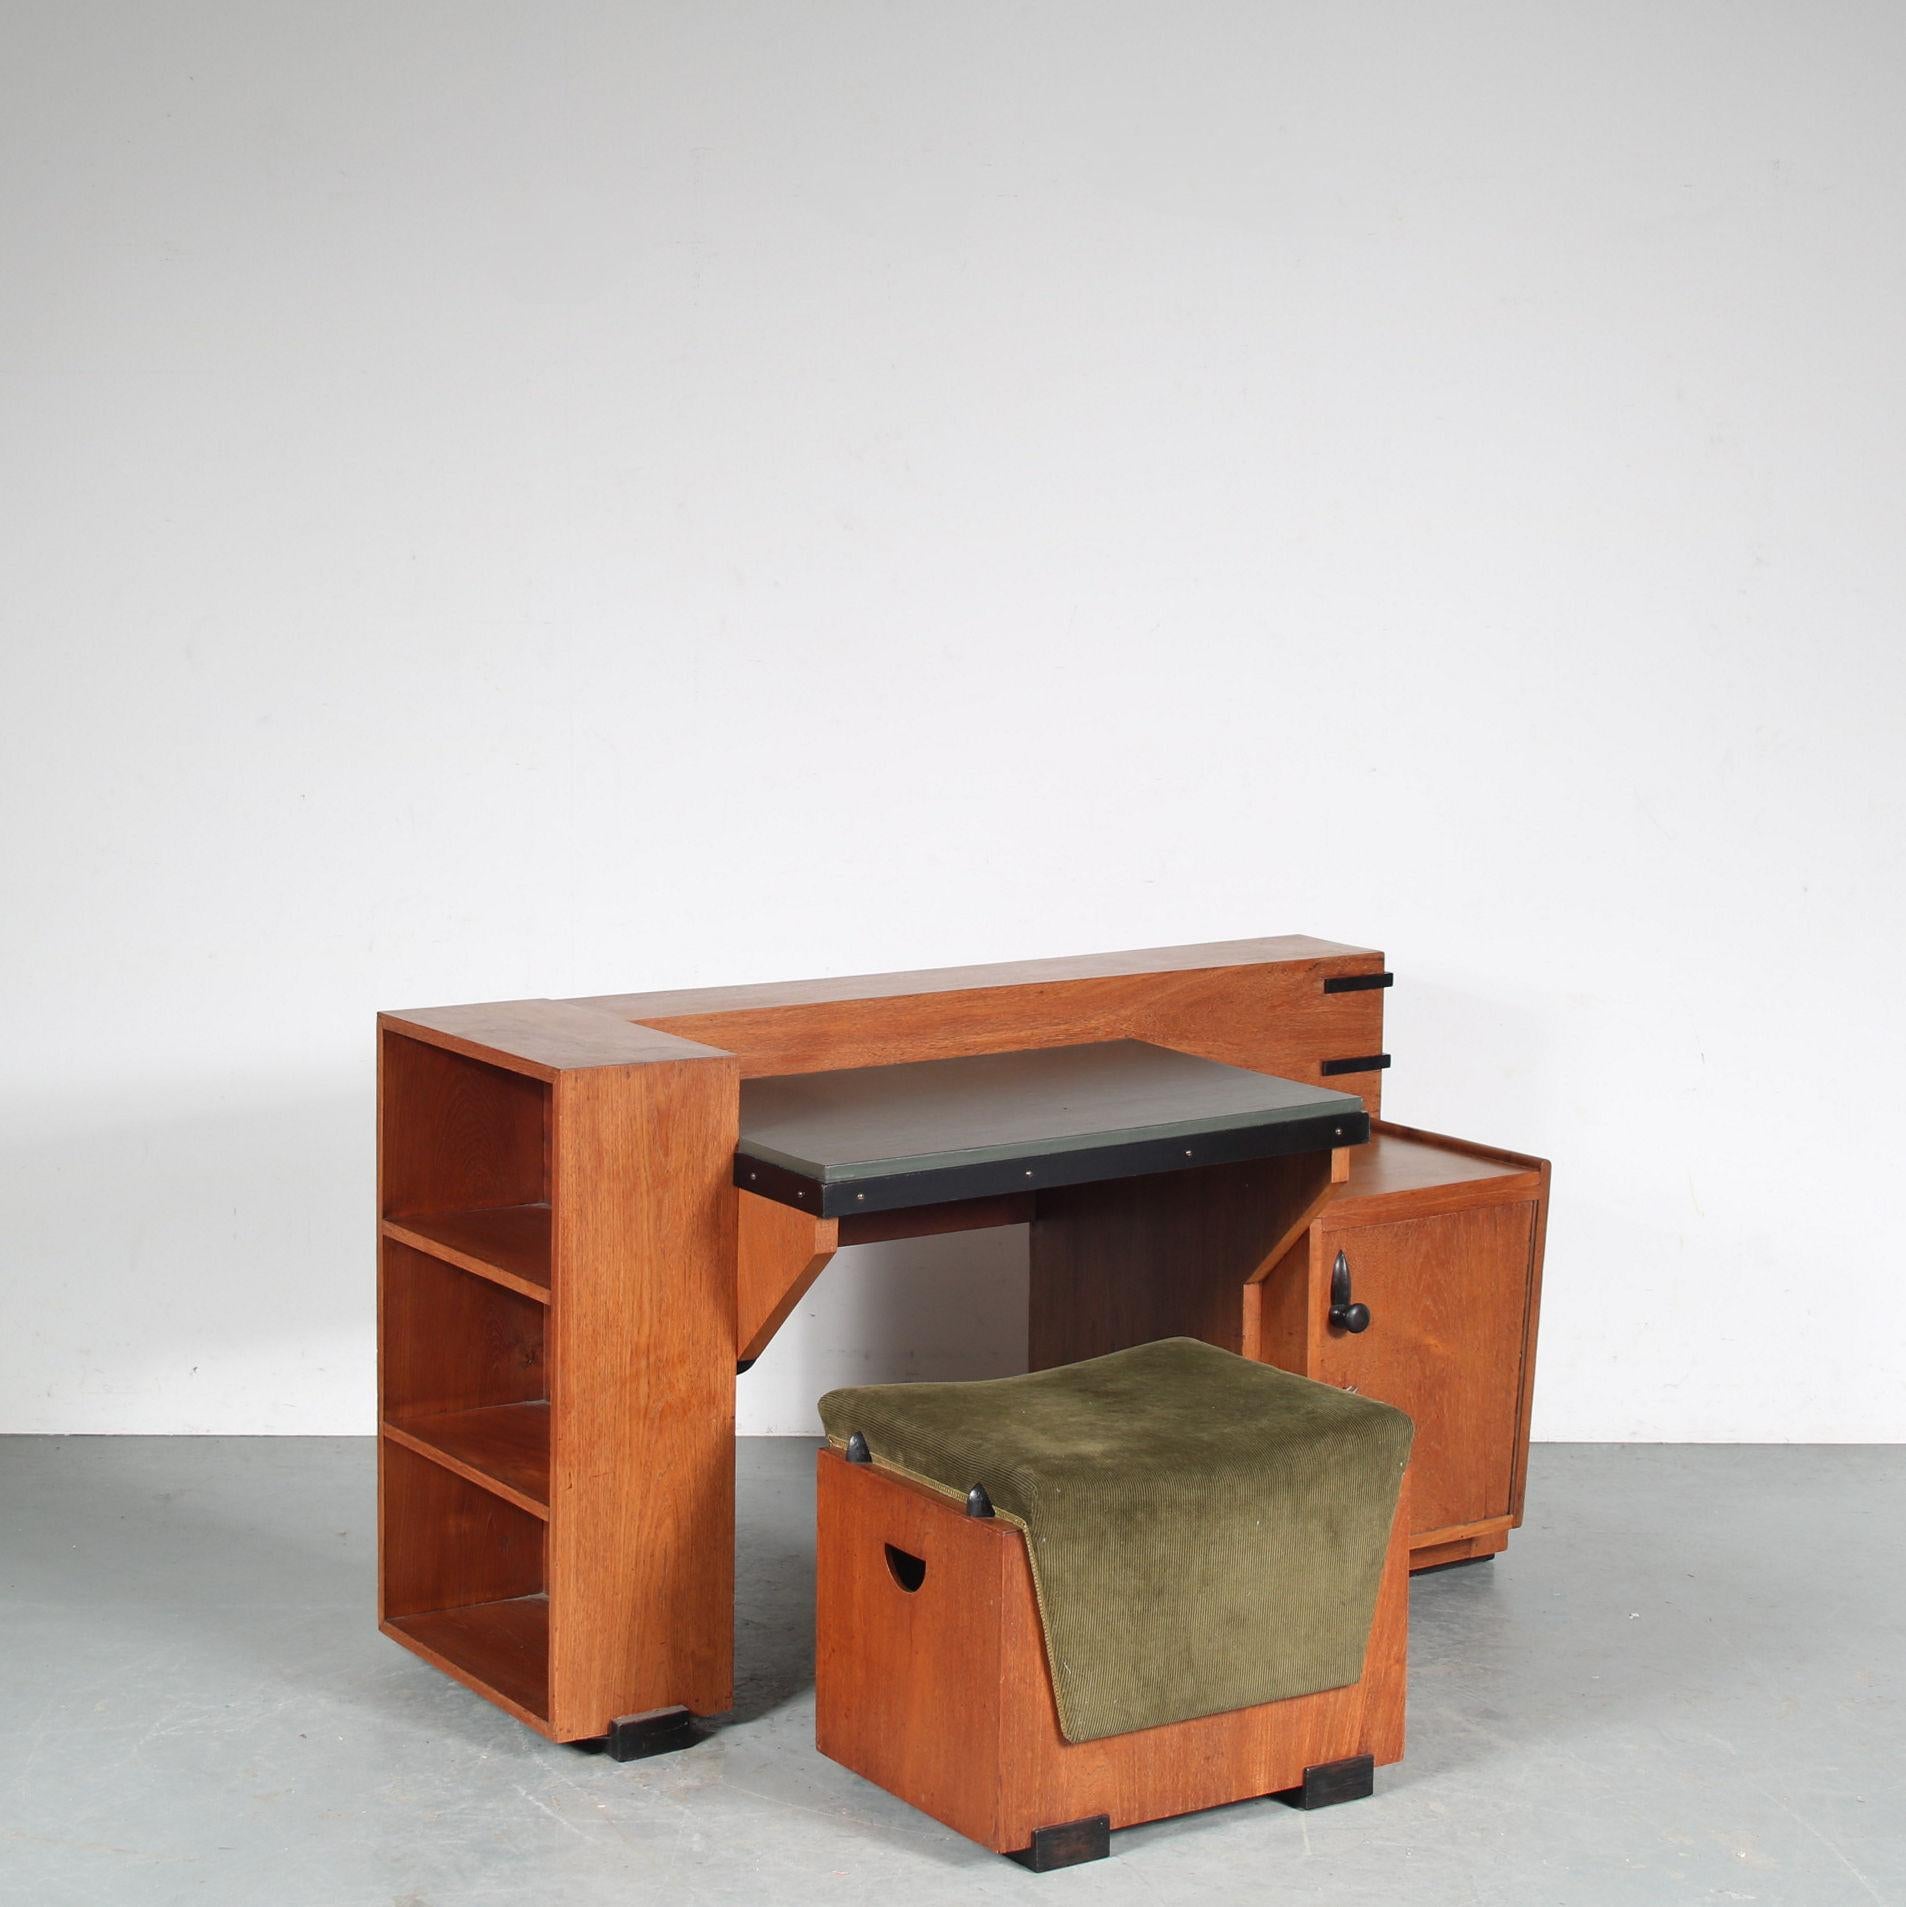 Ein Schreibtisch / Schminktisch im Kolonialstil, entworfen von Toko van der Pol in Java, Indonesien um 1930.

Die rechteckige und asymmetrische Form des Schreibtischs ist von der Neuen Haager Schule (1925-1940) inspiriert. Aus hochwertigem